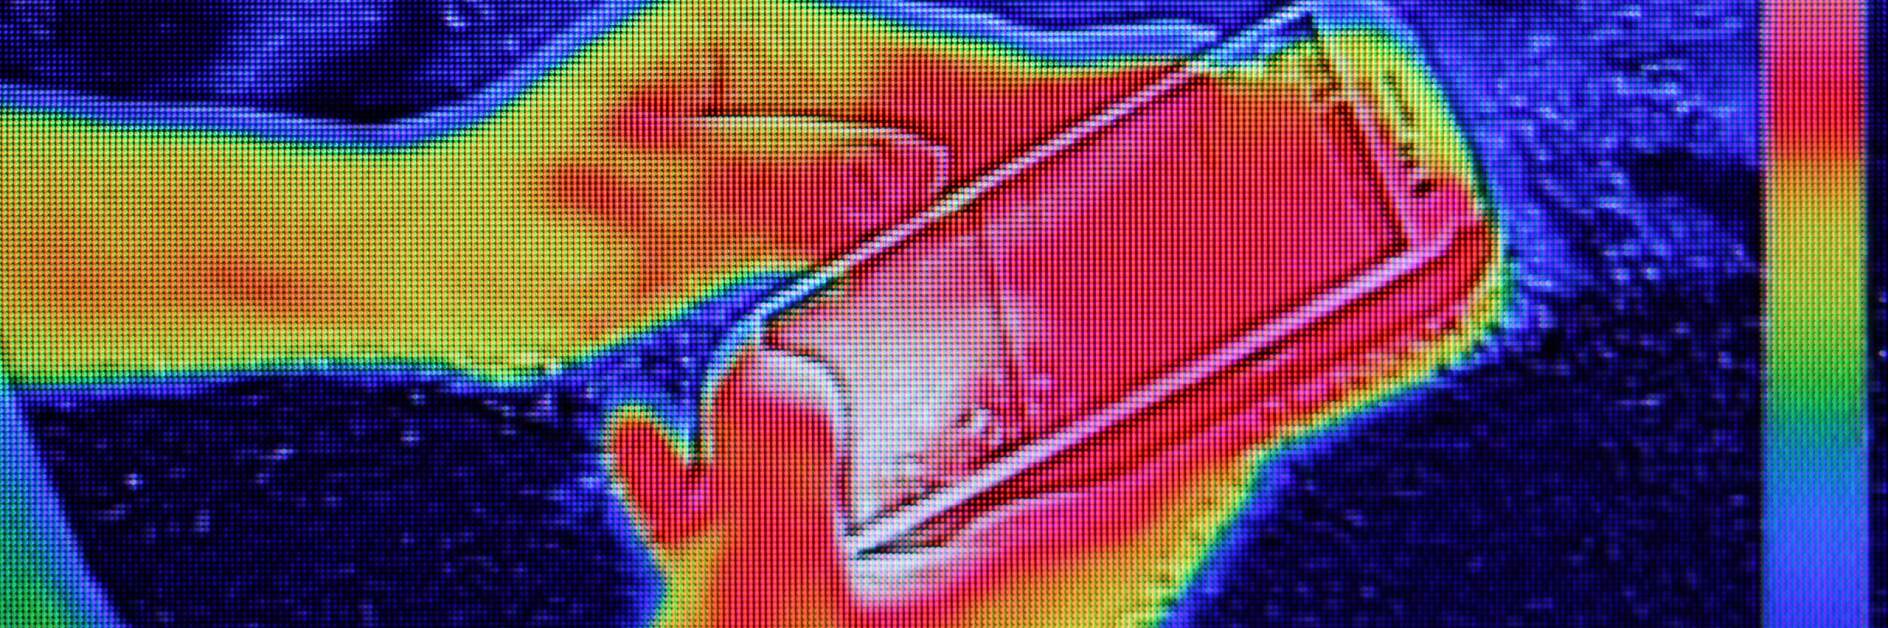 Immagine a infrarossi che mostra l'emissione di calore quando la ragazza utilizza lo smartphone